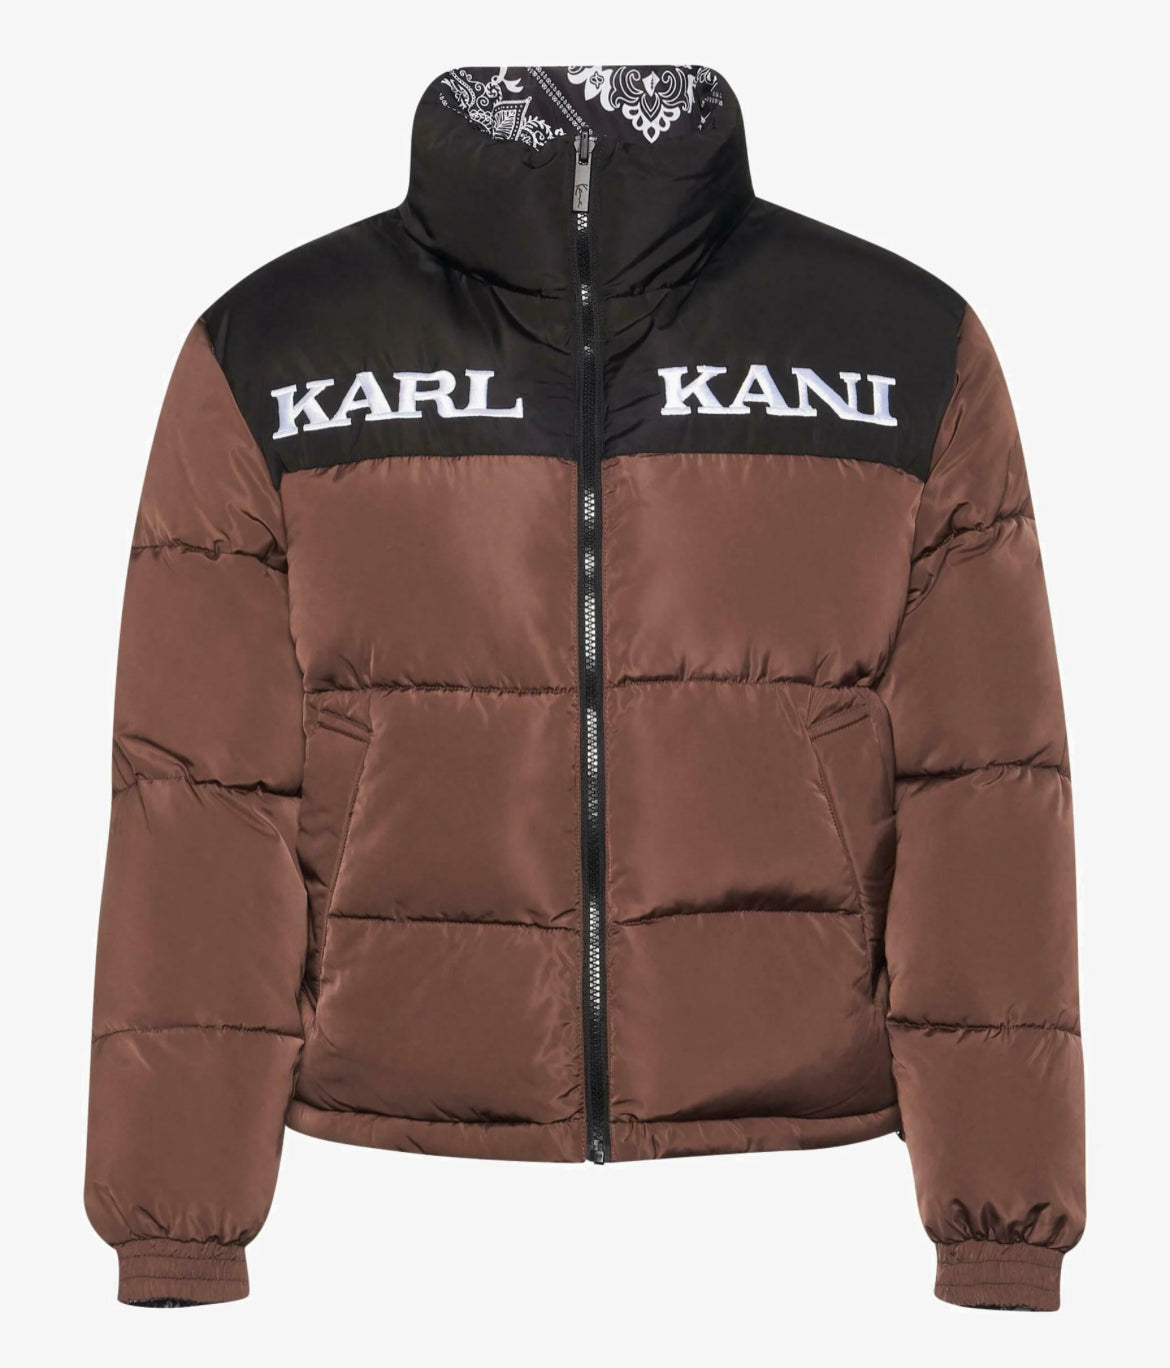 Karl Kani Retro Paisley Reversible Block Puffer Jacket (Woman)